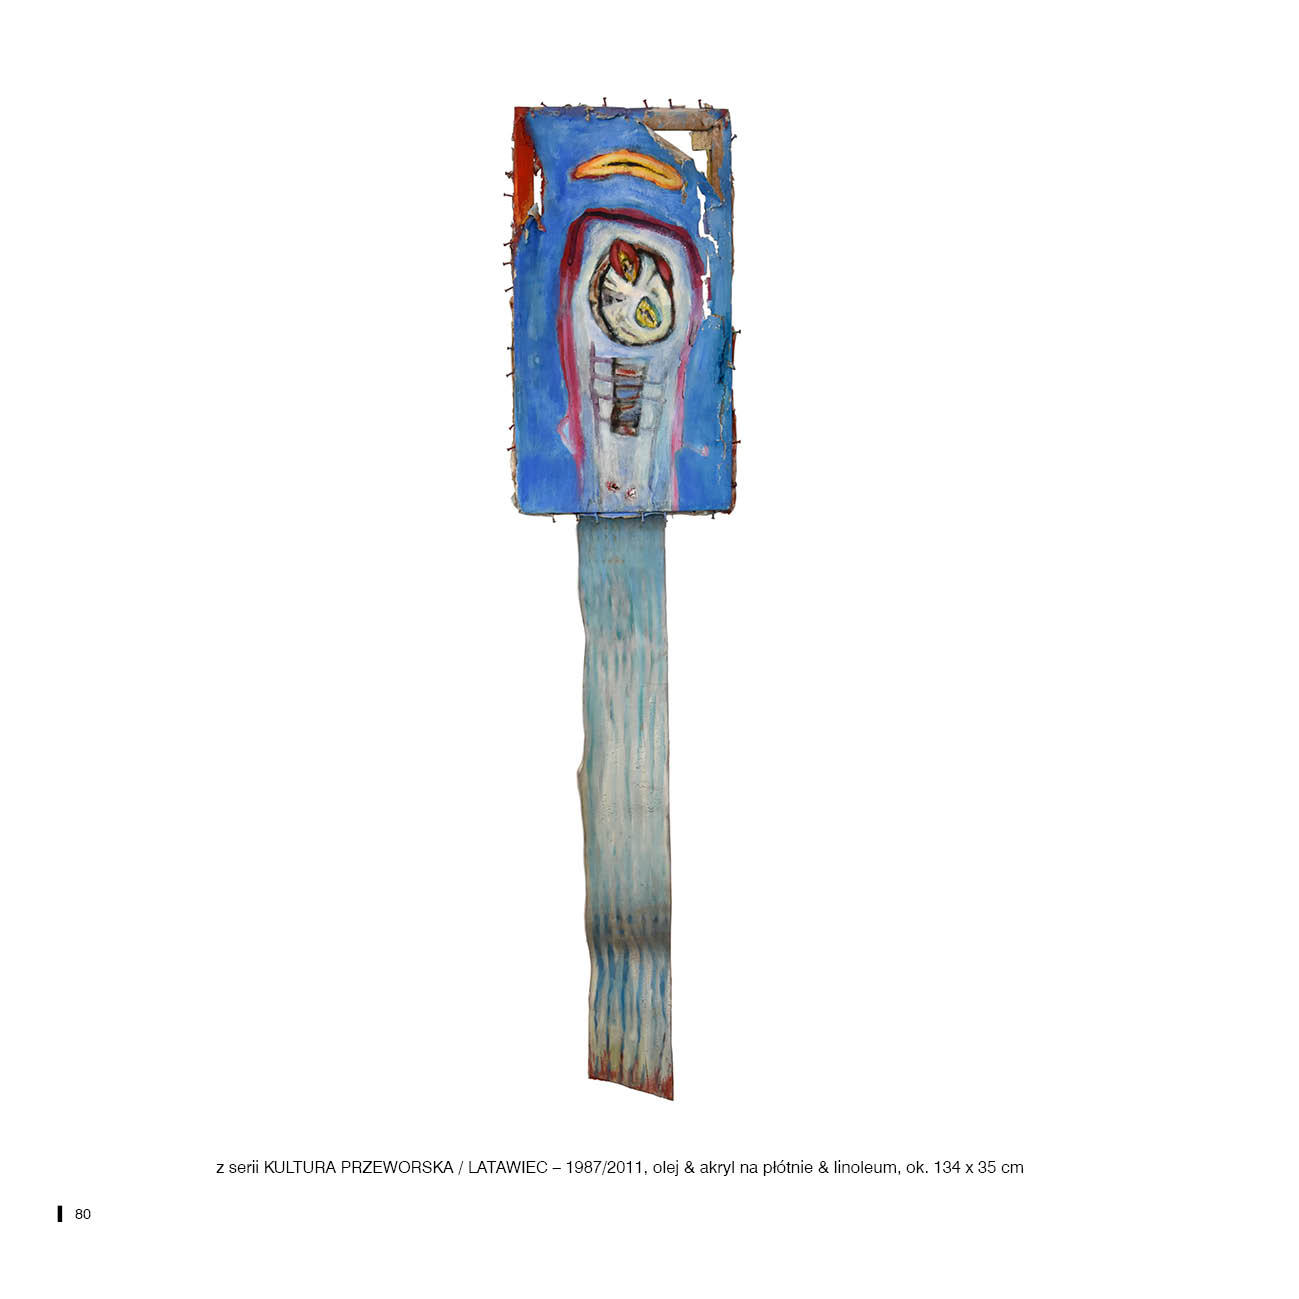 z serii KULTURA PRZEWORSKA / LATAWIEC – 1987/2011, olej & akryl na płótnie & linoleum, ok. 134 x 35 cm